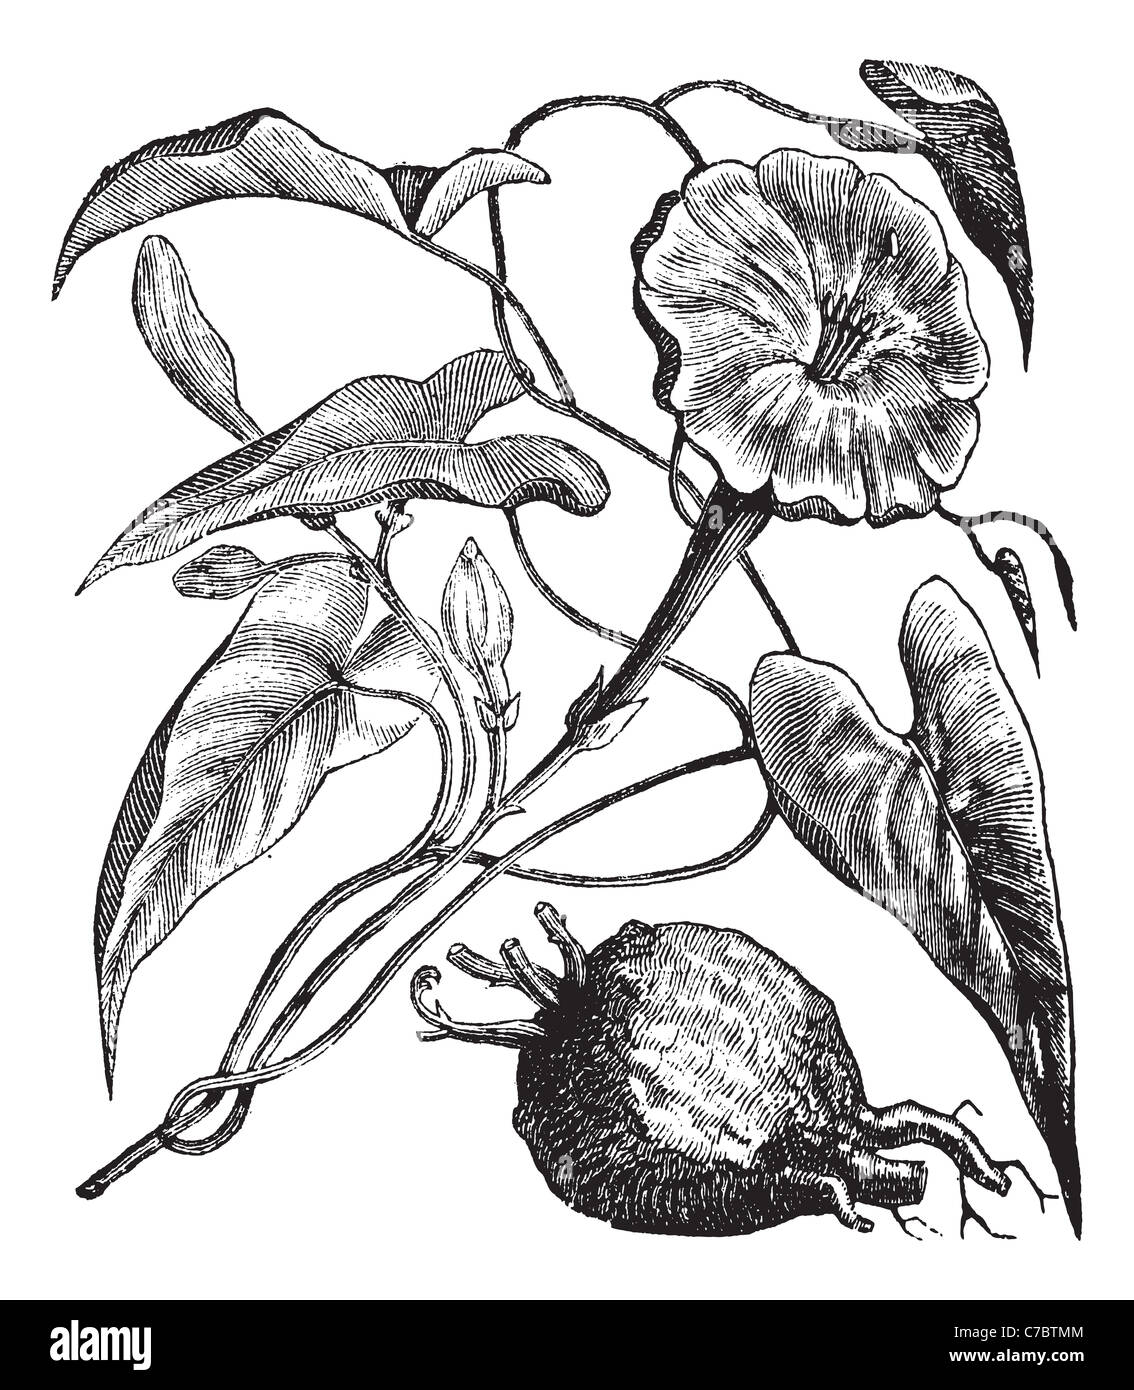 Exogonium purga or Jalapa, vintage engraving. Old engraved illustration of Exogonium purga isolated on a white background. Stock Photo